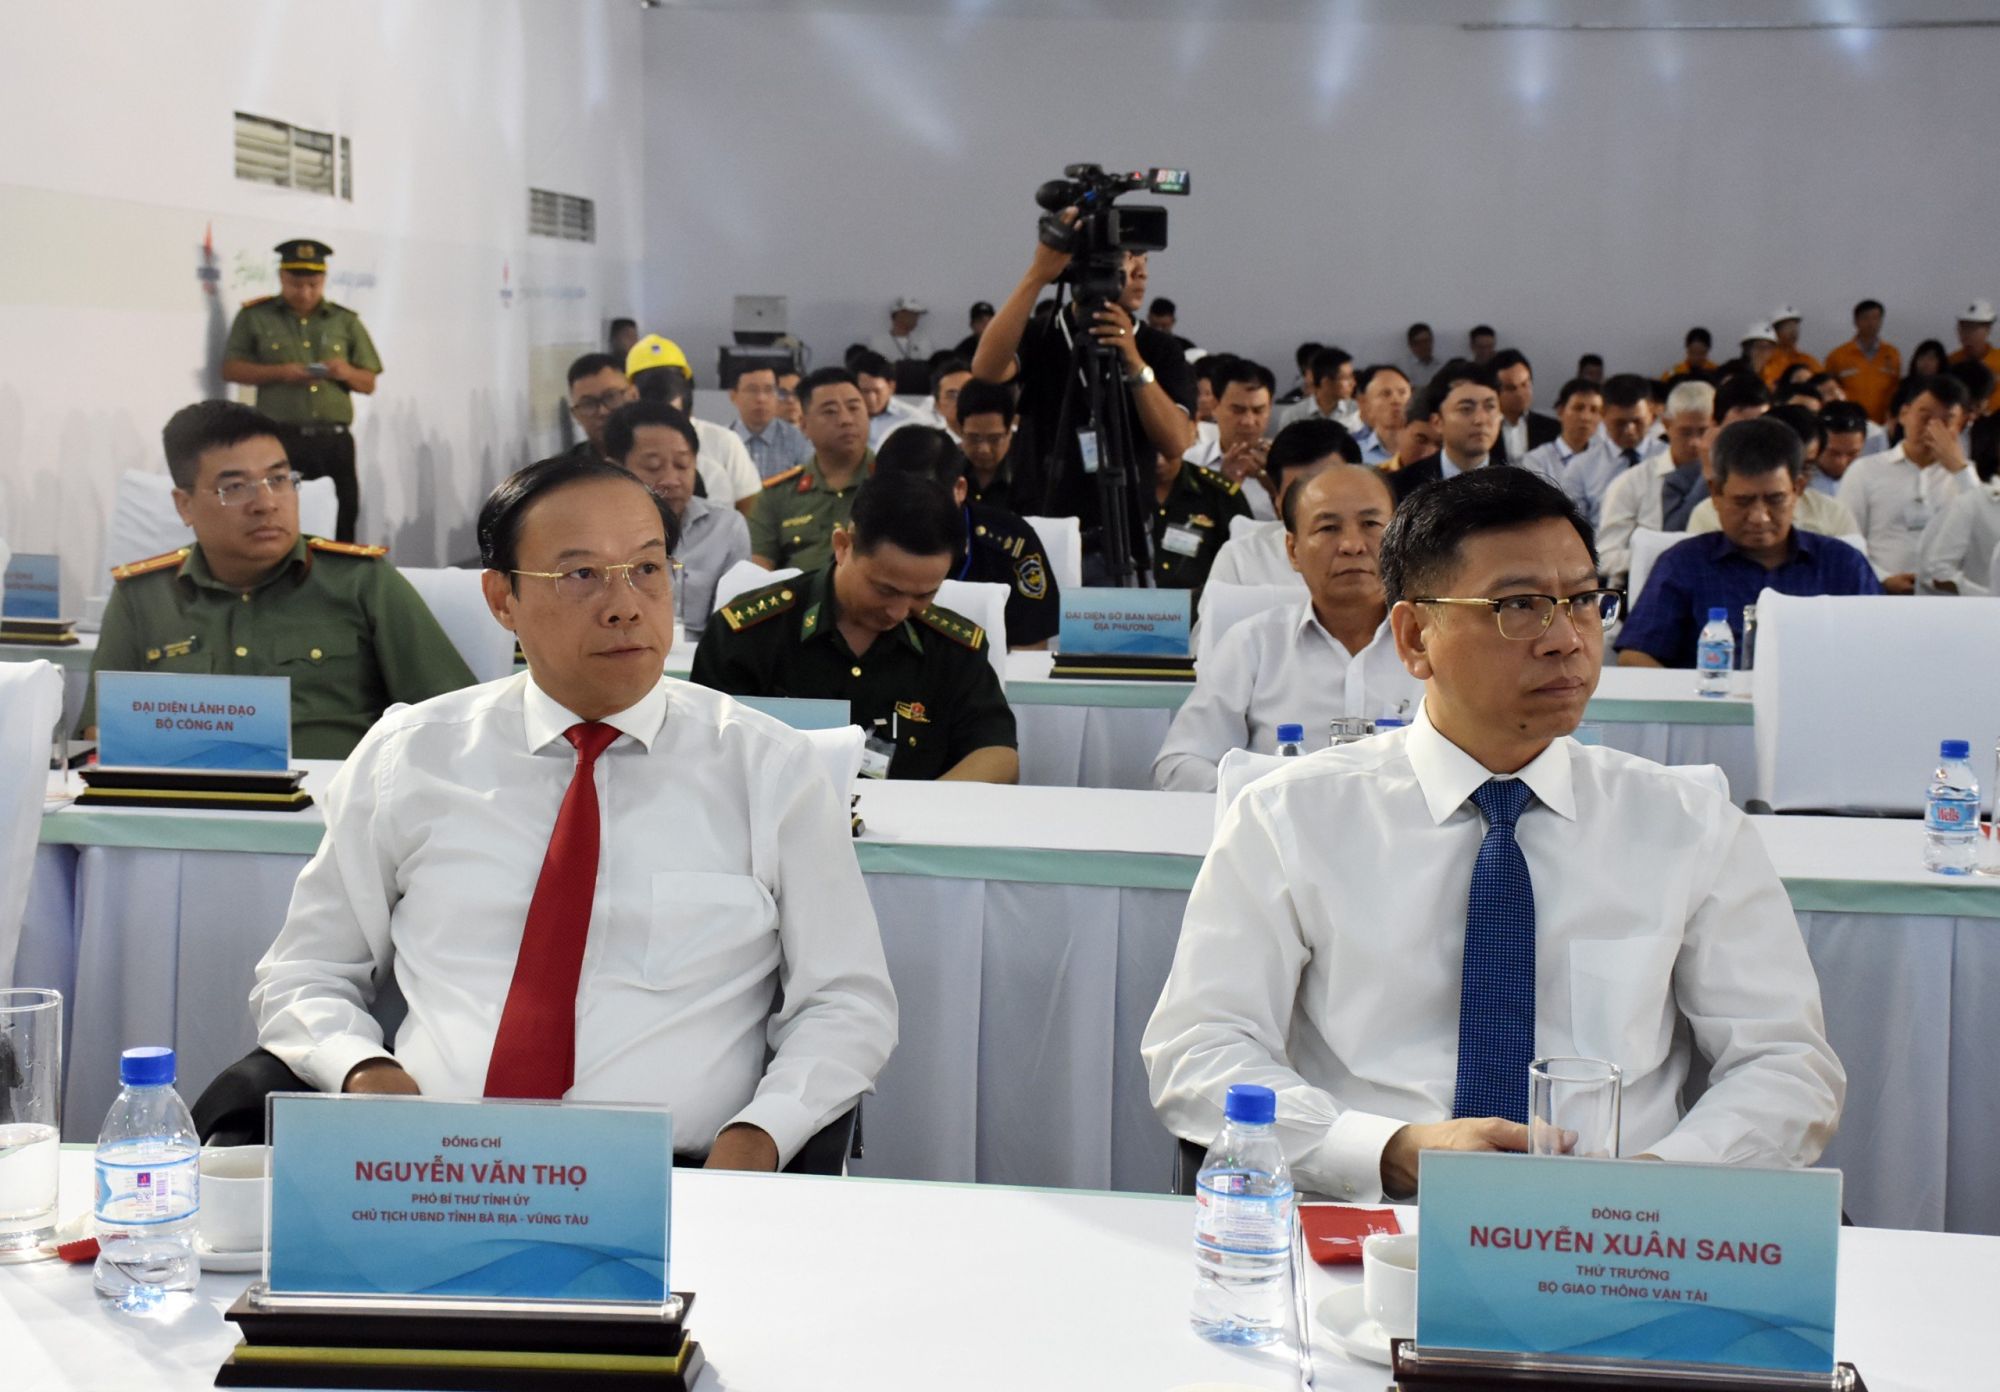 Ông Lê Xuân Sang, Thứ trưởng Bộ GT-VT và ông Nguyễn Văn Thọ, Chủ tịch UBND tỉnh Bà Rịa-Vũng Tàu tham dự lễ.